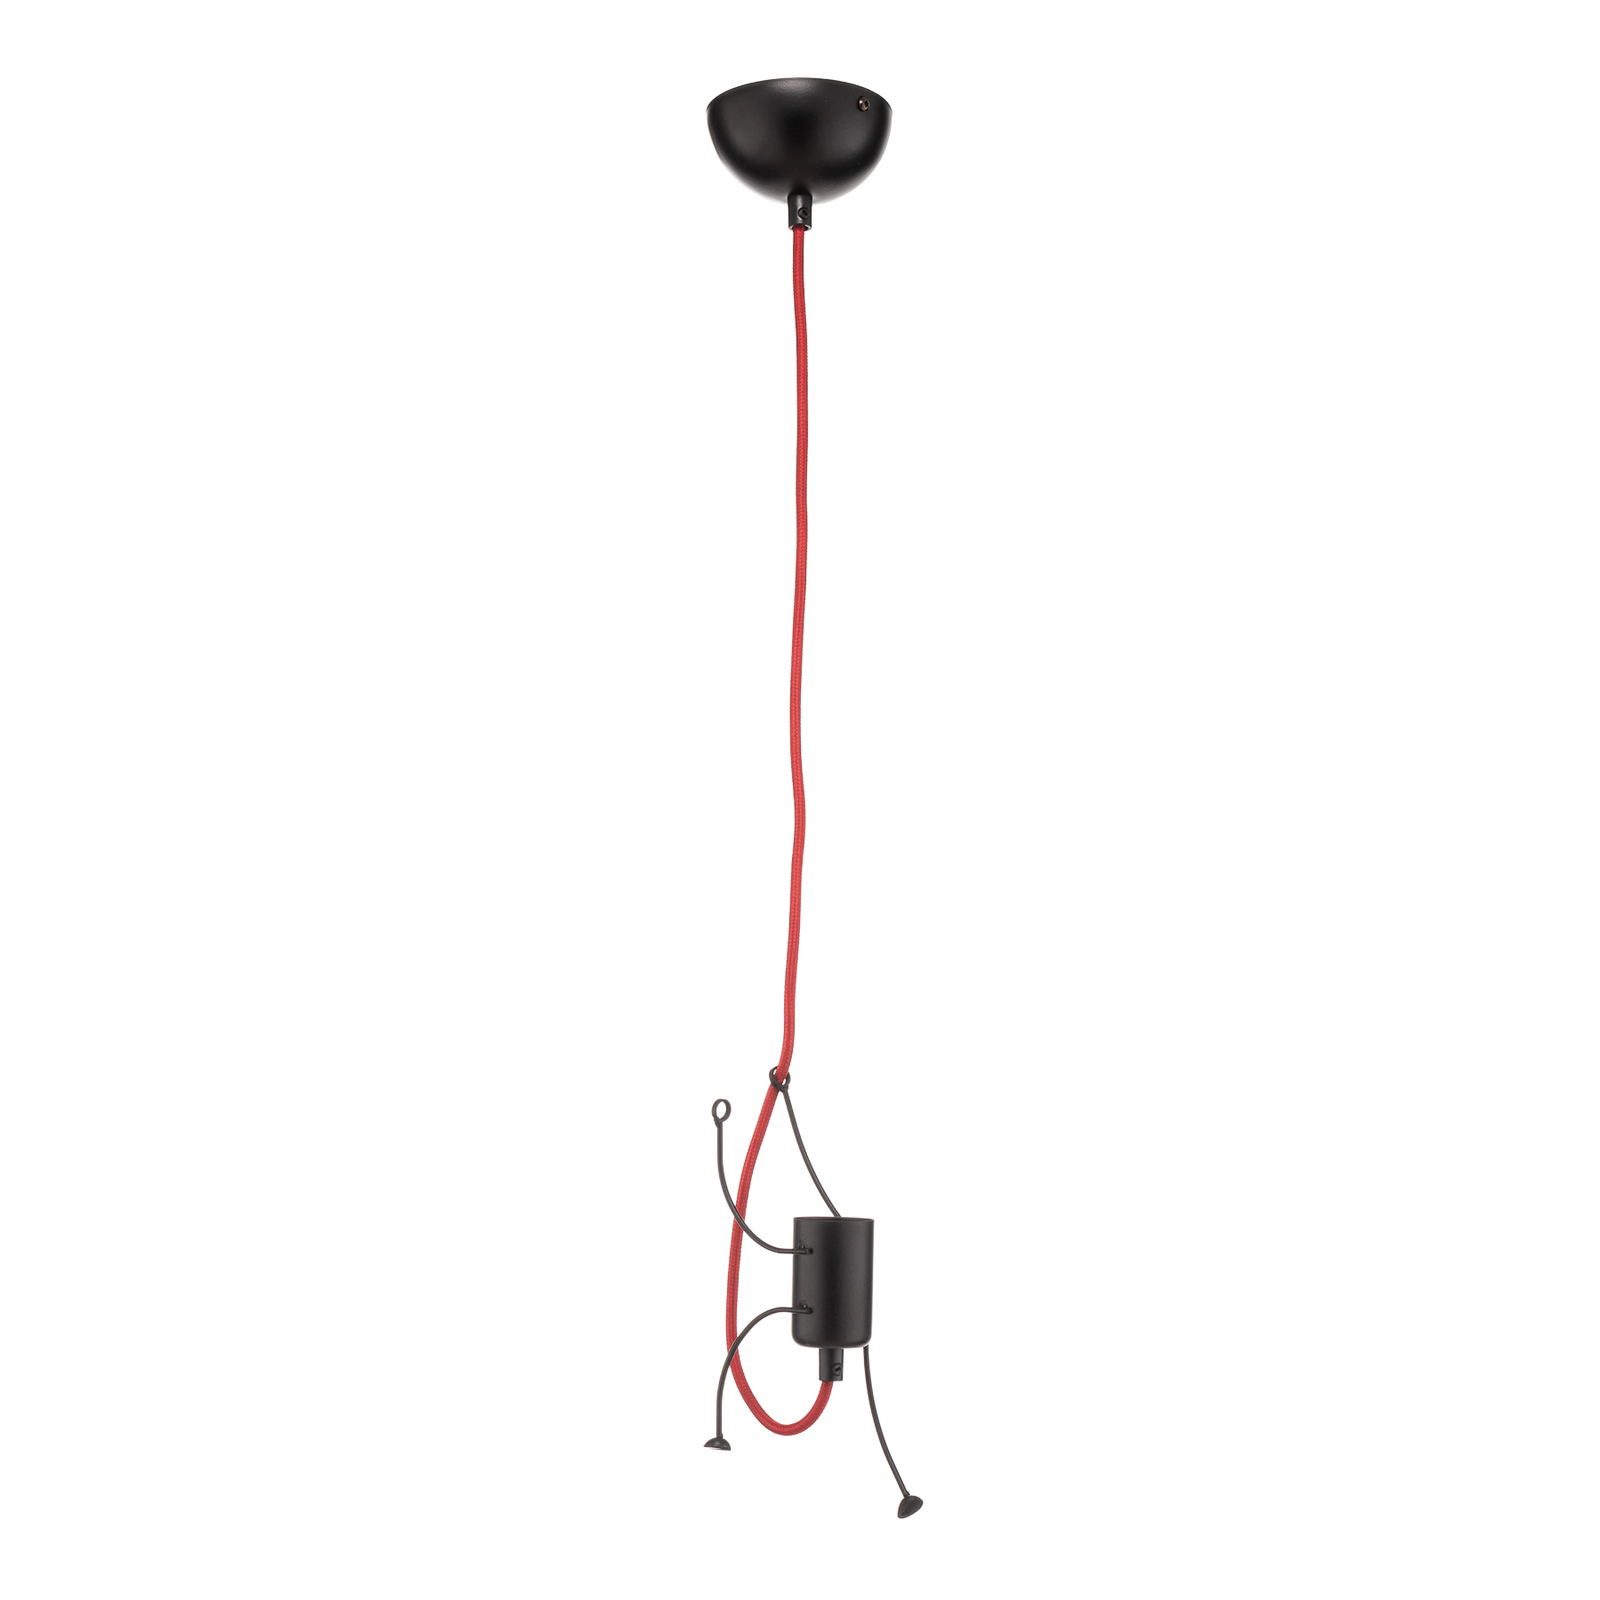 Bobi 1 viseća svjetiljka u crnoj boji, crveni kabel, 1 žarulja.